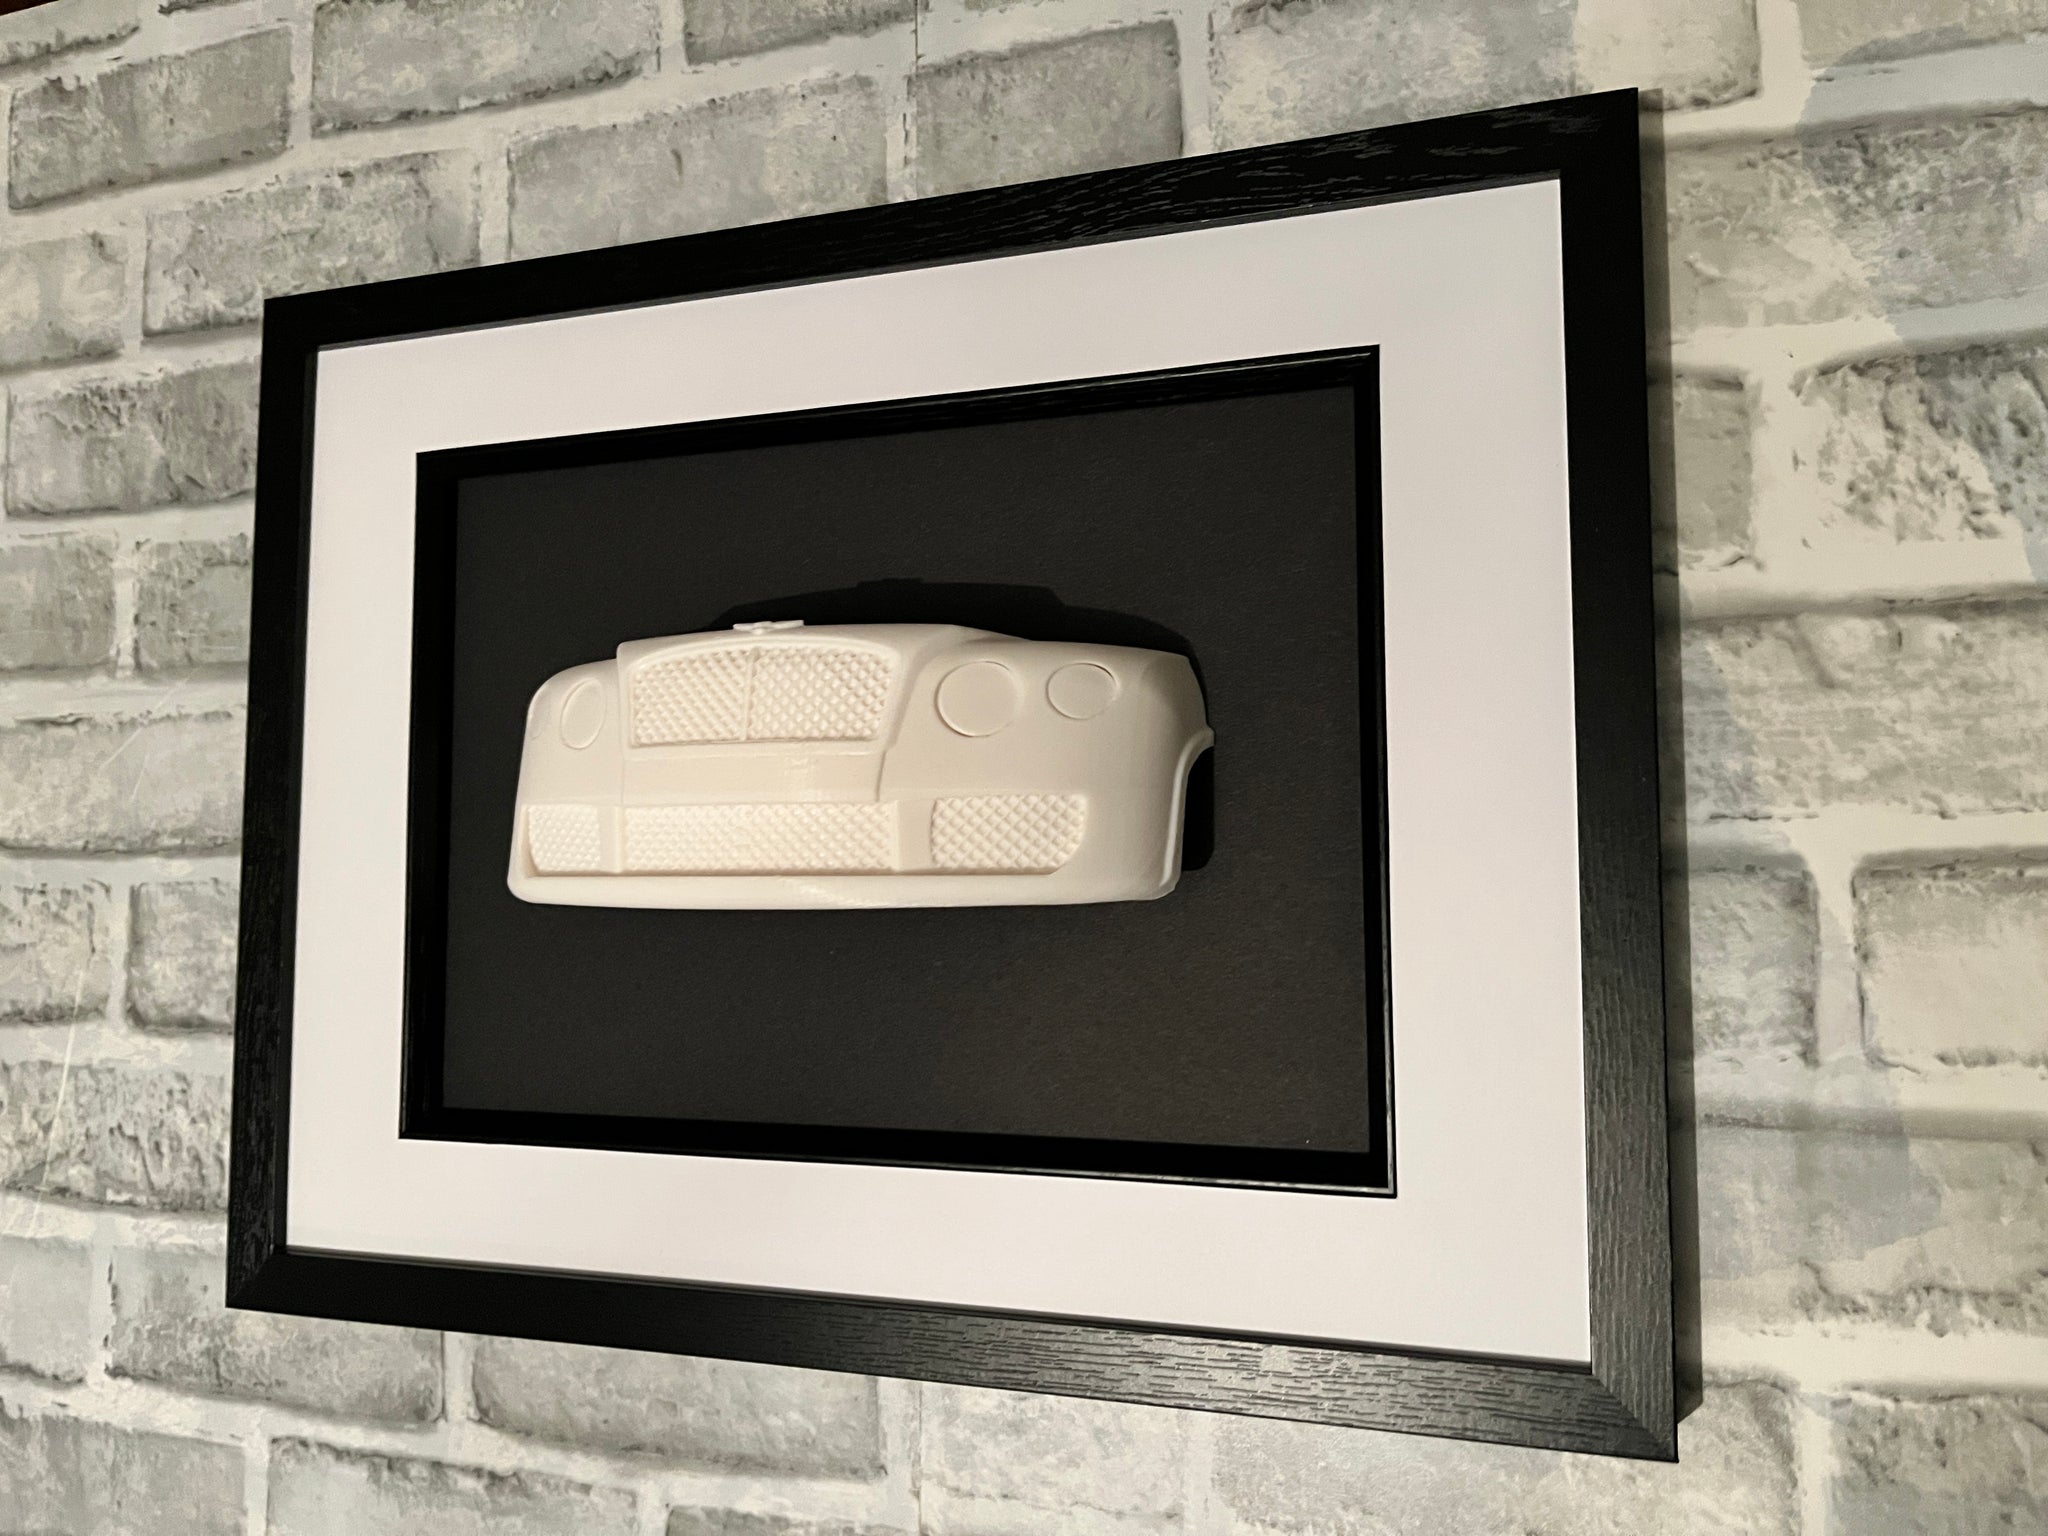 Bentley Continental Art work 2004, 3D garage sculpture, car wall decor